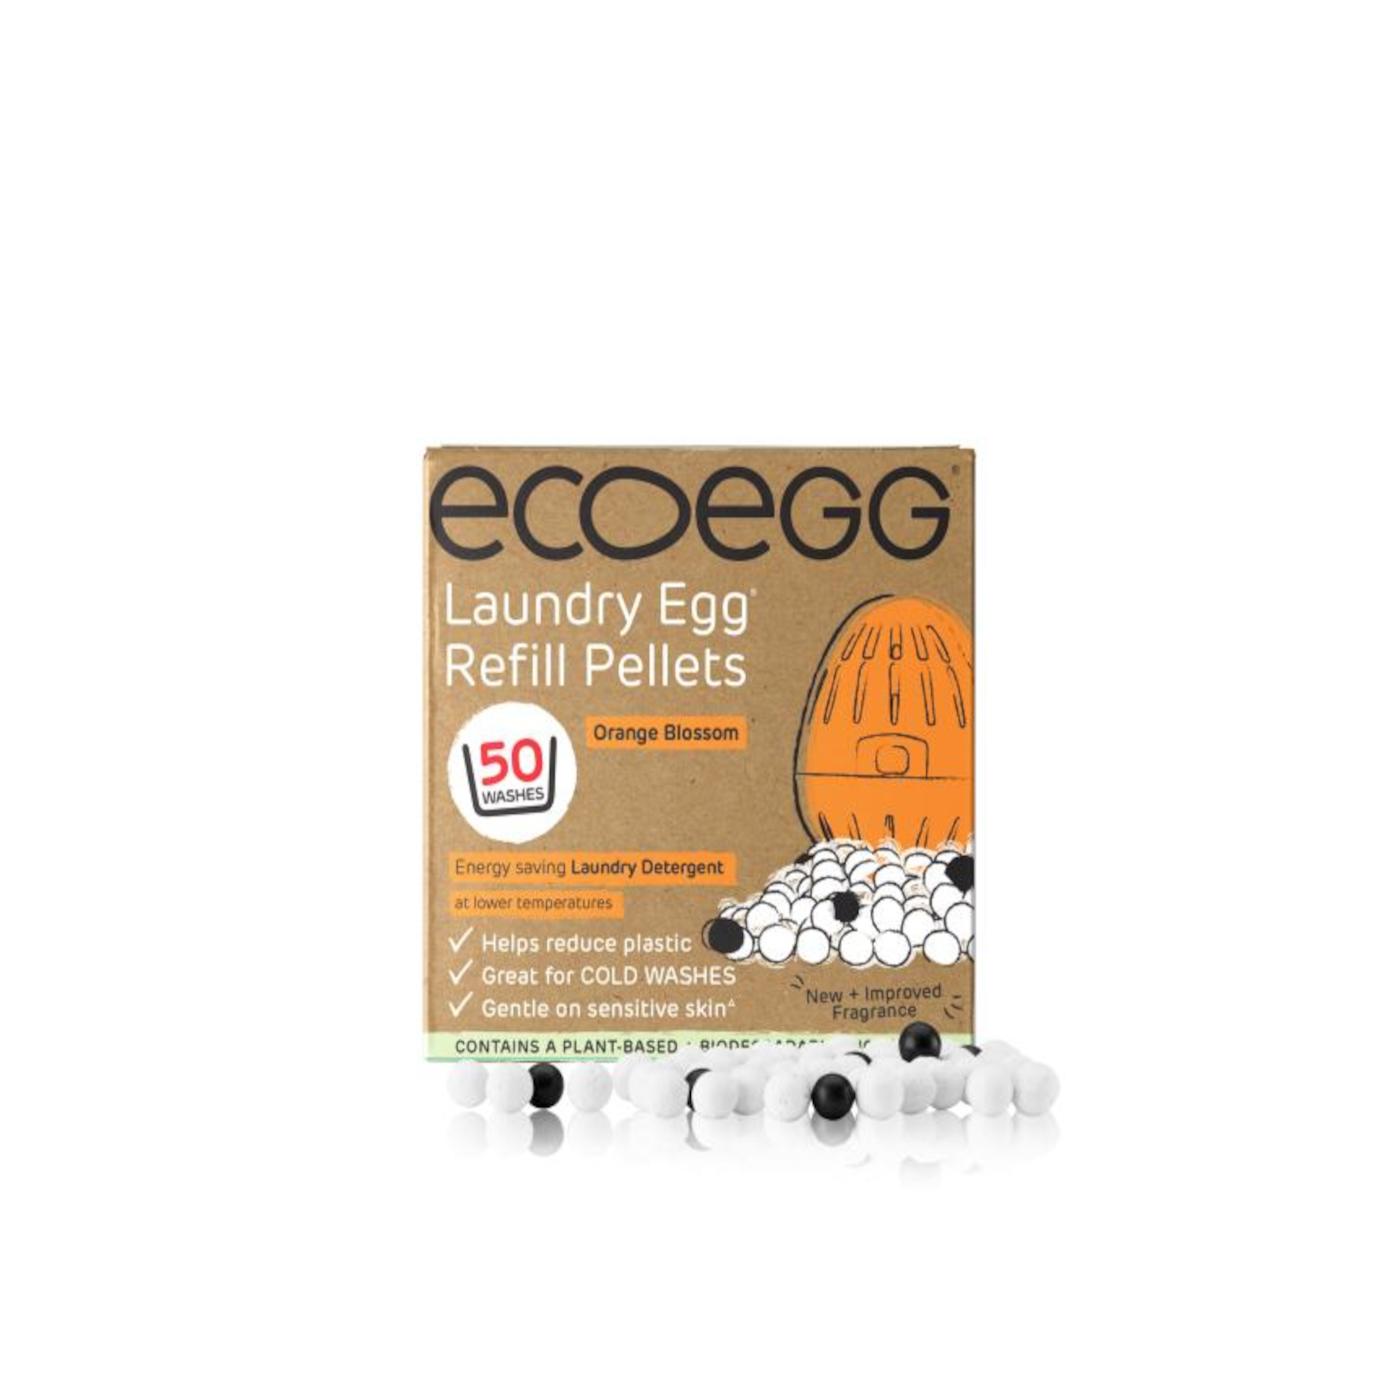 Ecoegg Náhradní náplň pro prací vajíčko na 50 praní, vůně pomerančové květy 50 praní